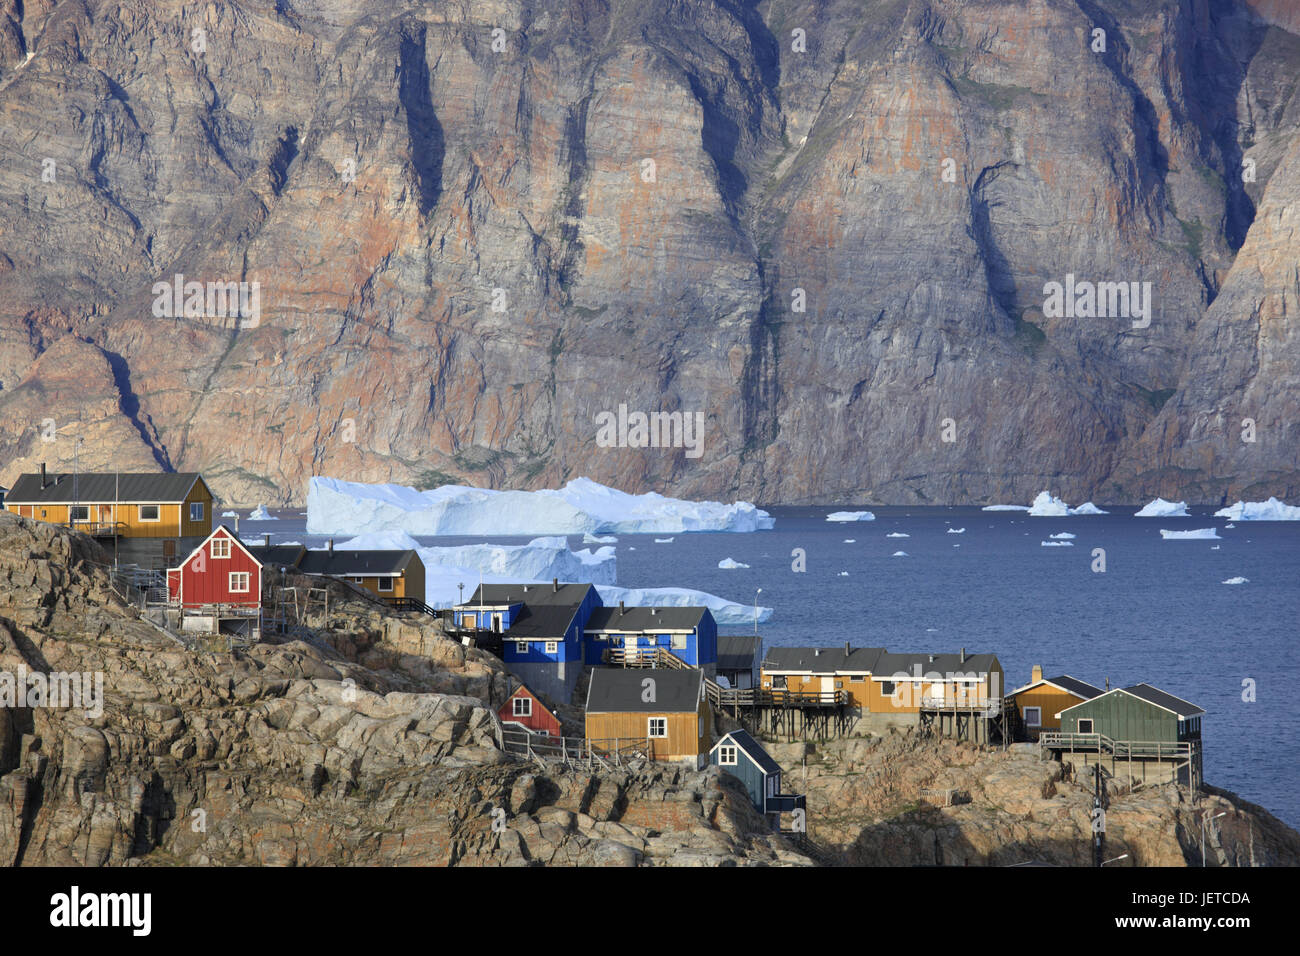 La Groenlandia, Uummannaq, Fjord, iceberg, bile costa, case di legno, nel nord della Groenlandia, destinazione, scenario, sul mare Artico, ghiaccio, ghiacciaio, float, paesaggi costieri, case, case, costa, fuori, deserte, liquidazione, vista locale, Foto Stock